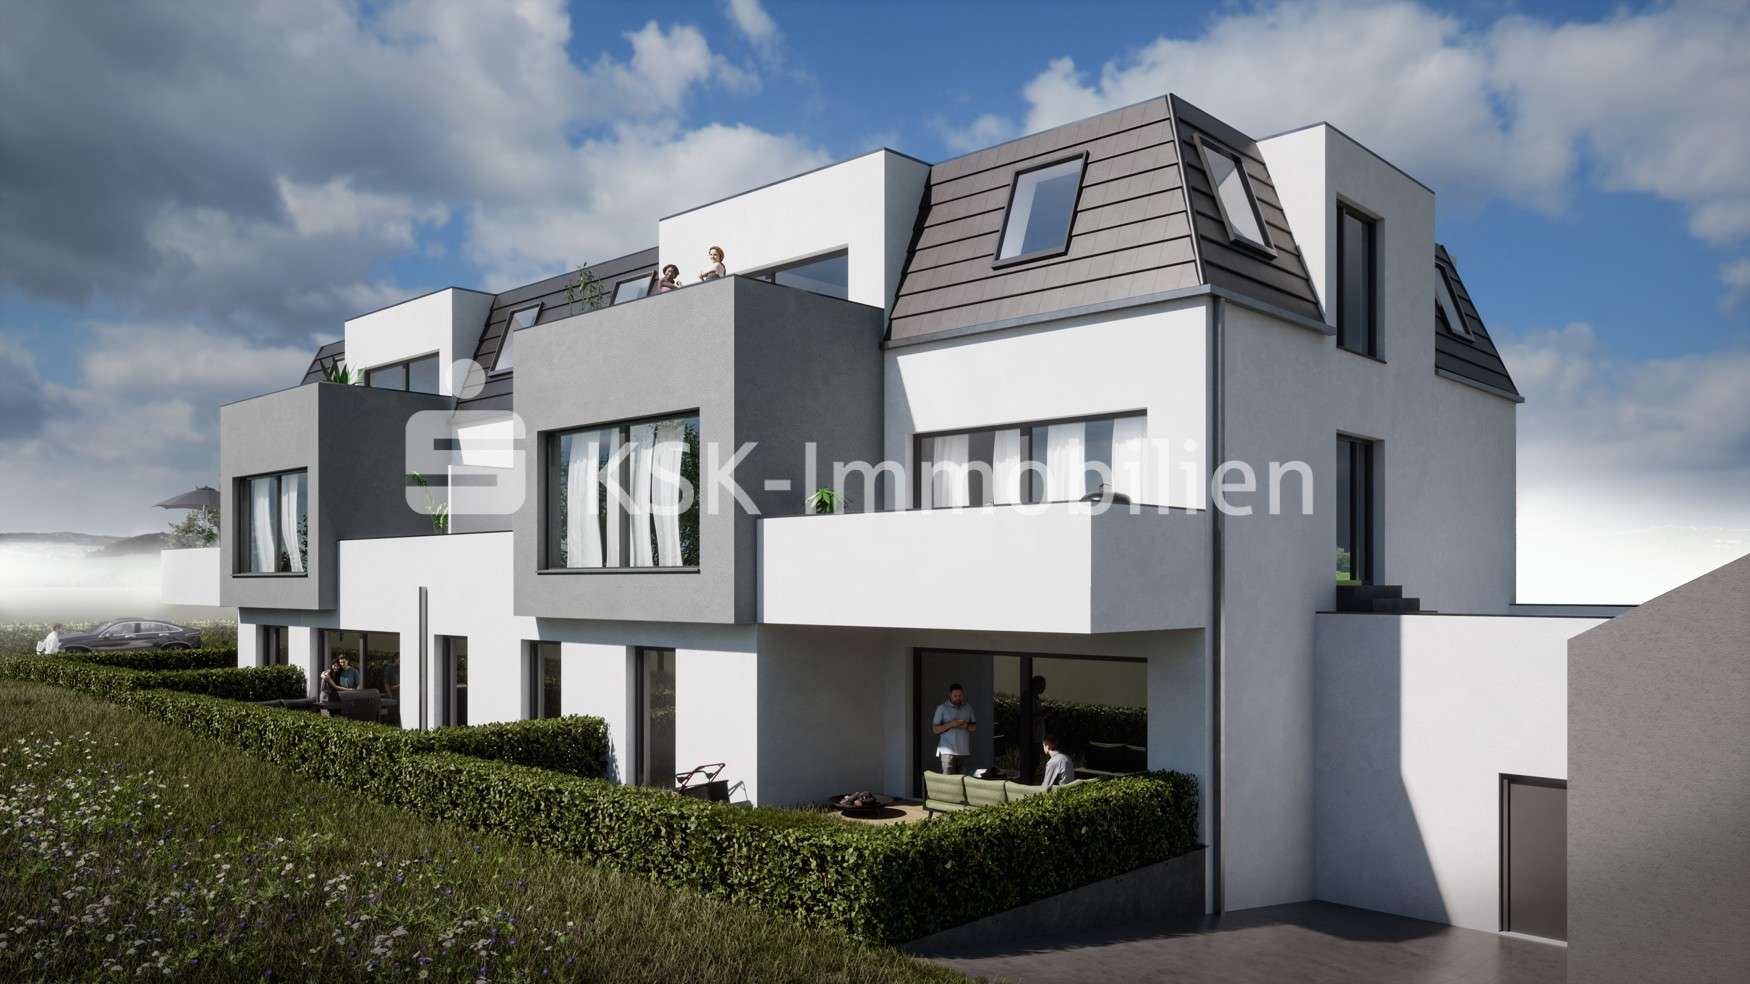 Gartenansicht - Etagenwohnung in 51467 Bergisch Gladbach mit 88m² kaufen